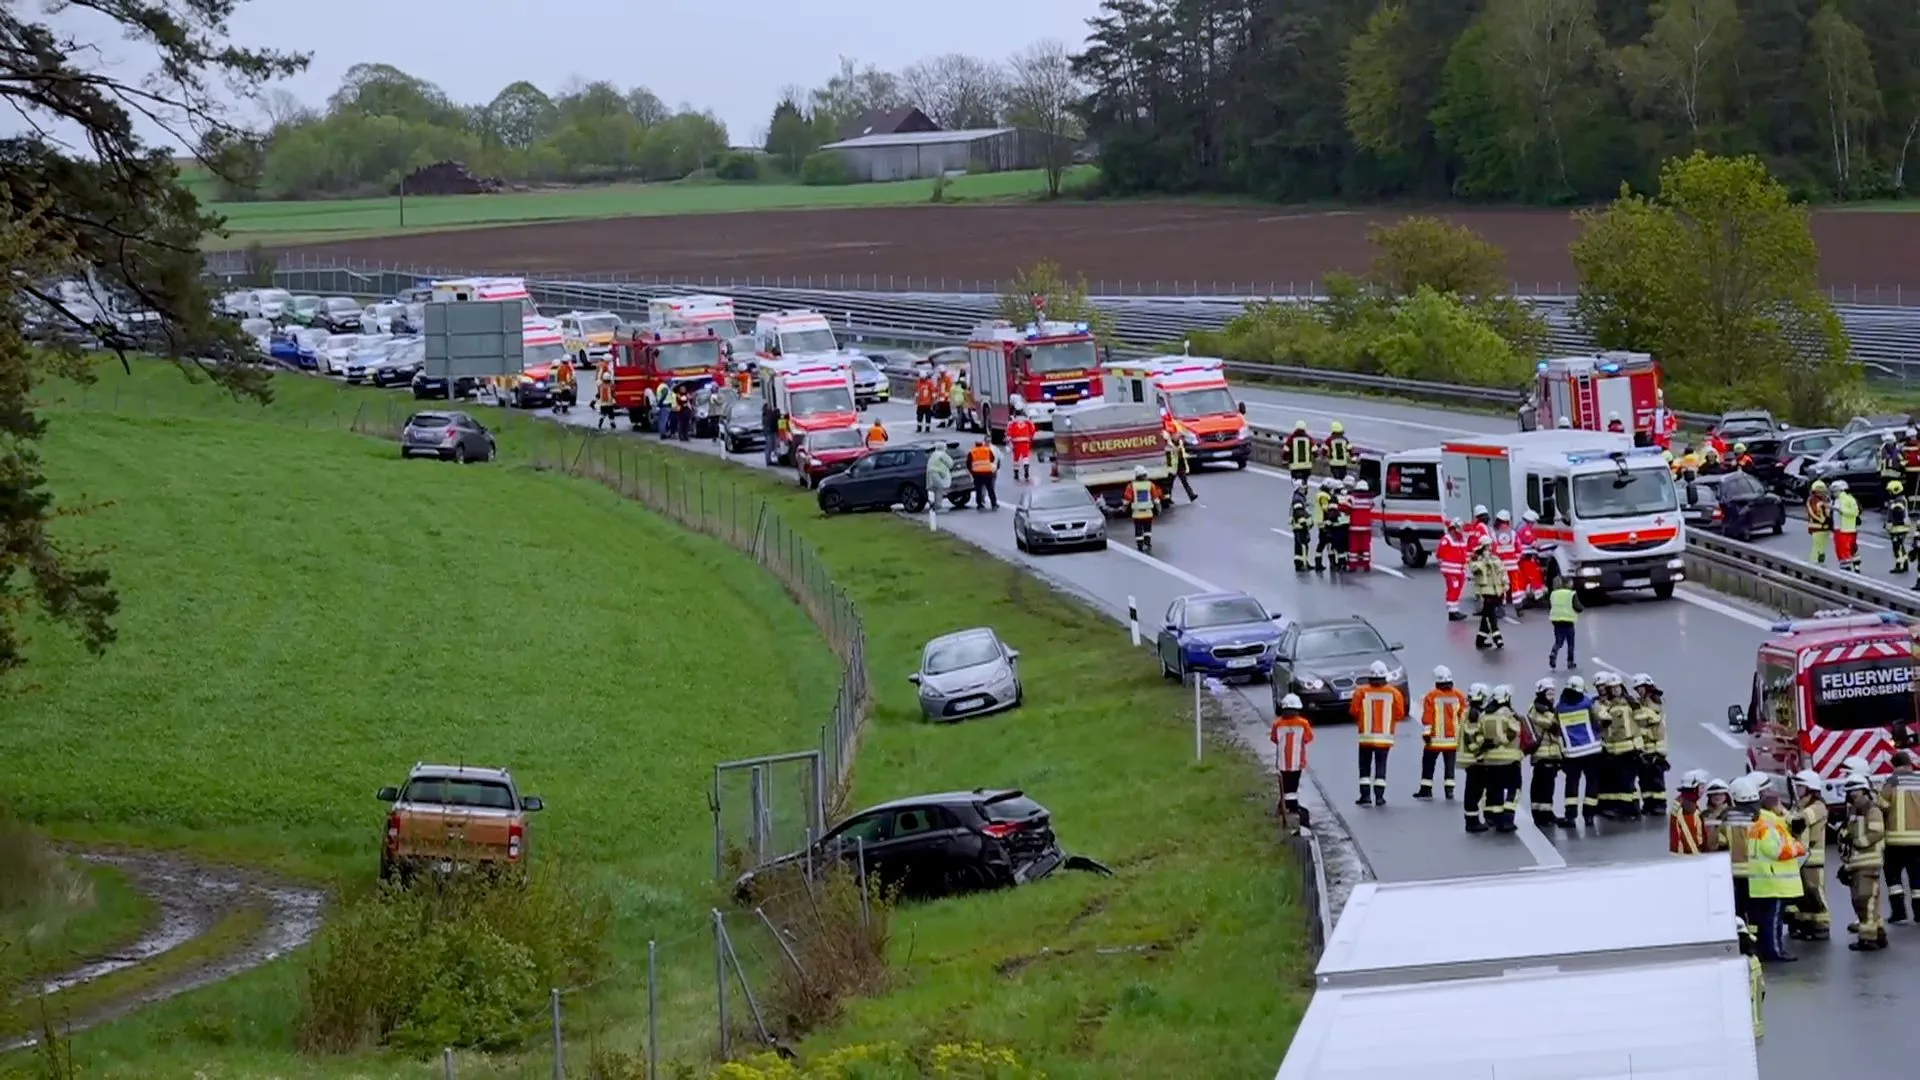 Massenkarambolage in Bayern - 24 Fahrzeuge beteiligt - Unfälle auf beiden Fahrtrichtungen